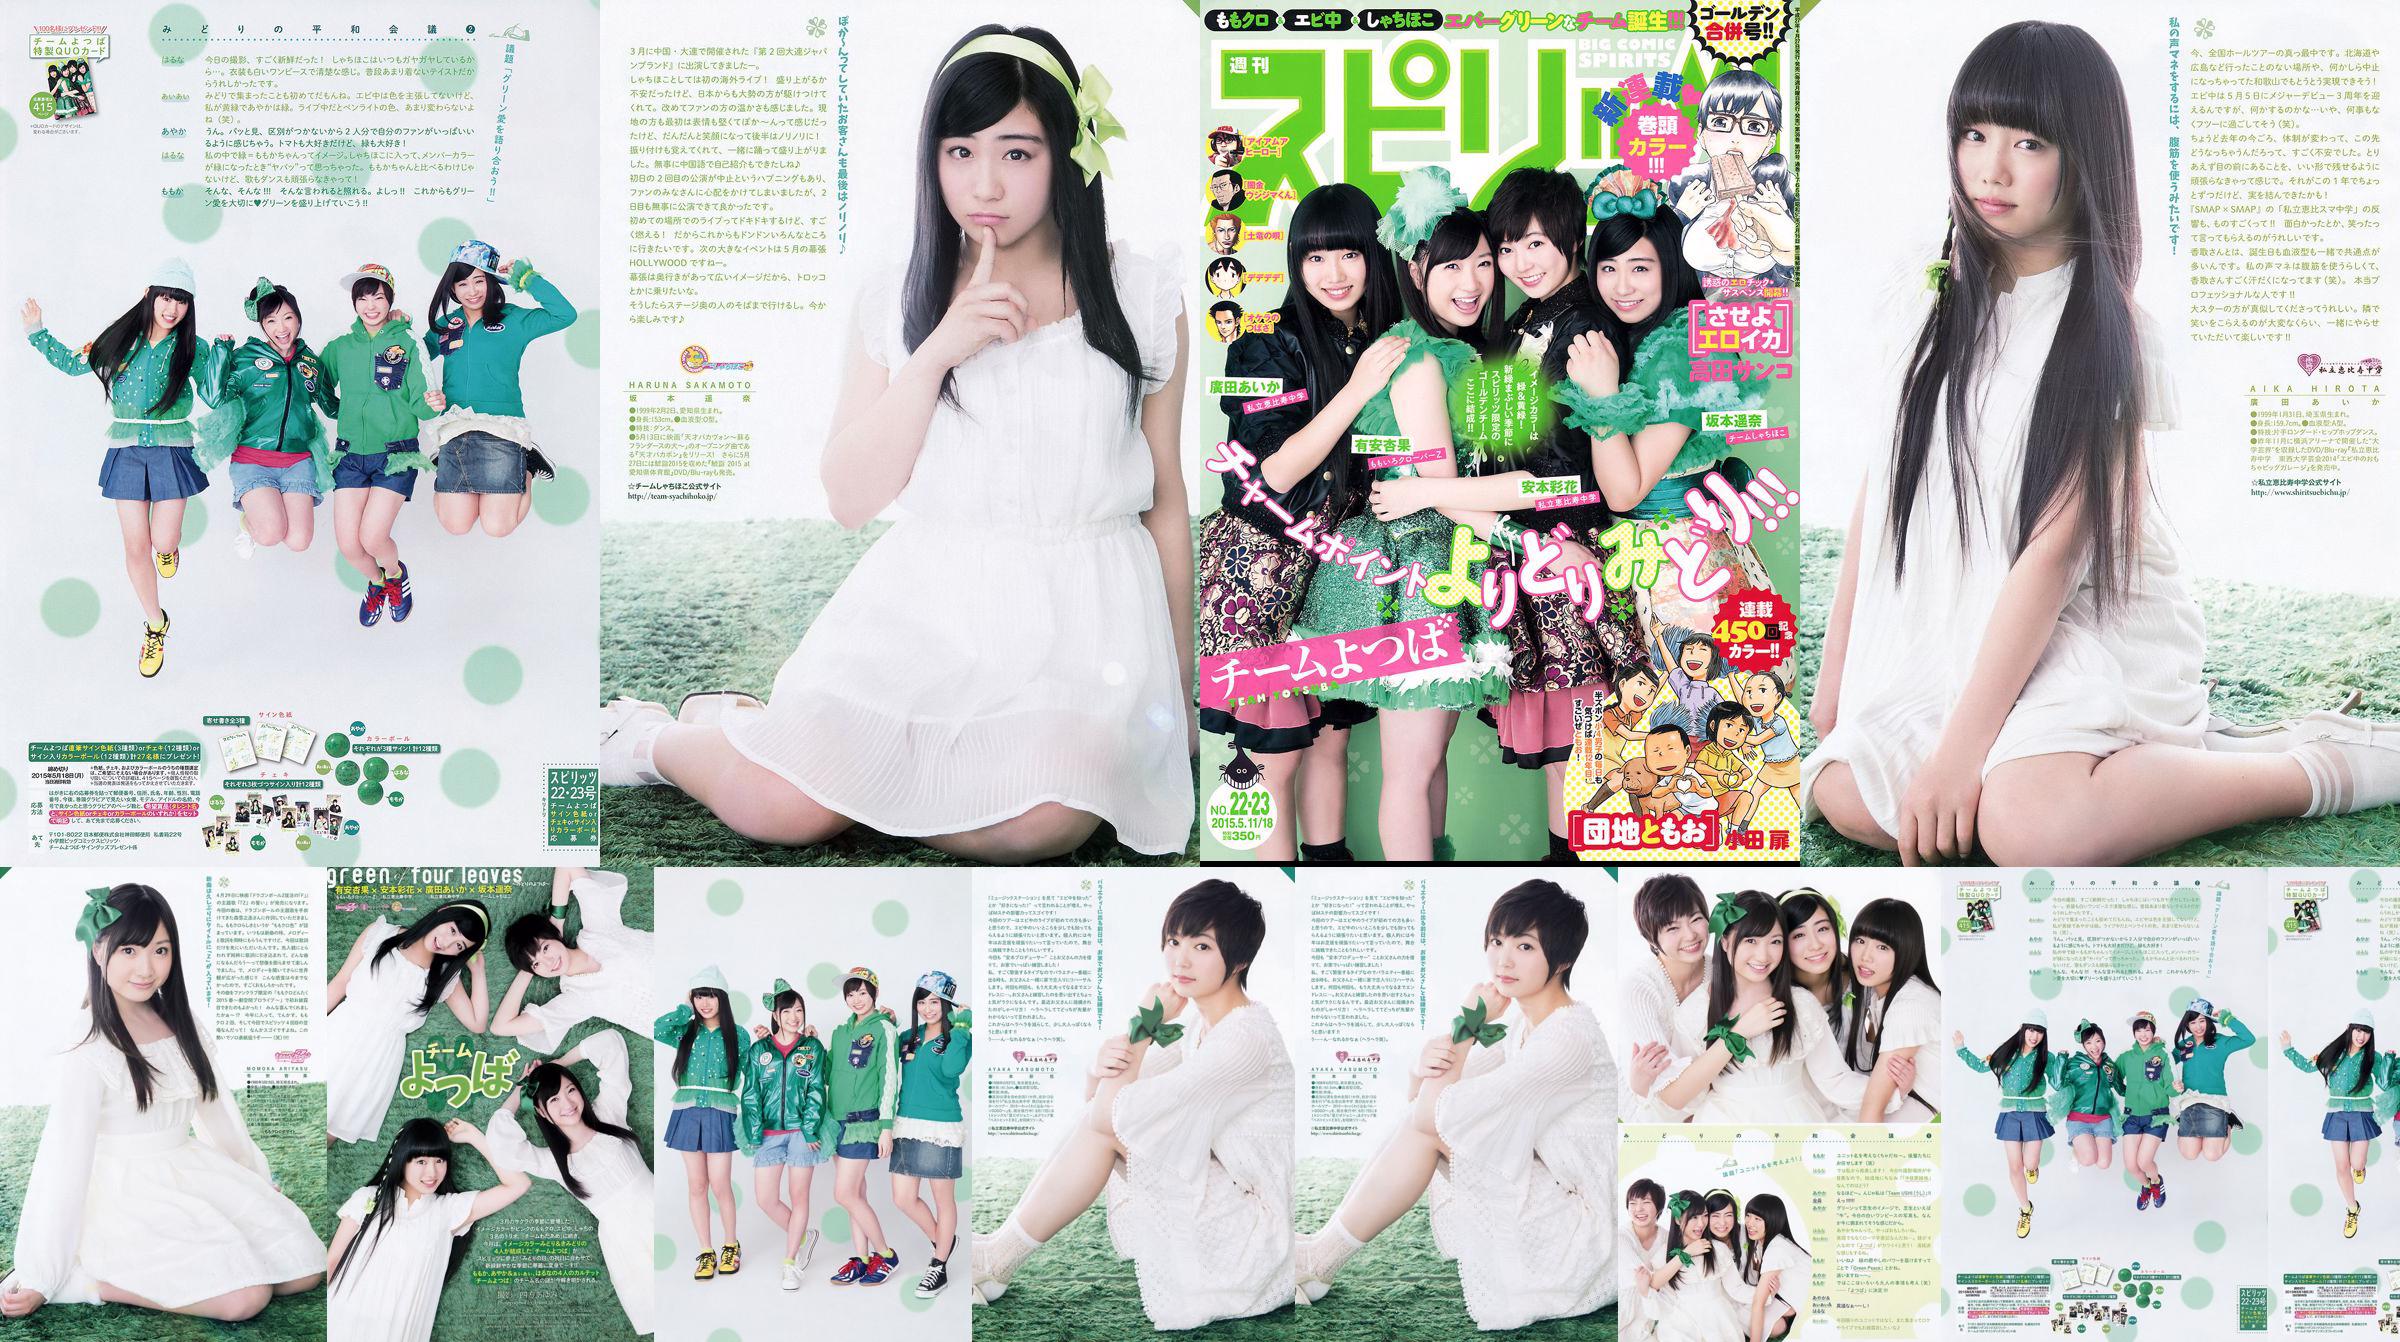 [Weekly Big Comic Spirits] Ayaka Ayana Ayana Sakamoto Haruna Hirota 2015 No.22-23 Photo Magazine No.1189e7 Pagina 4